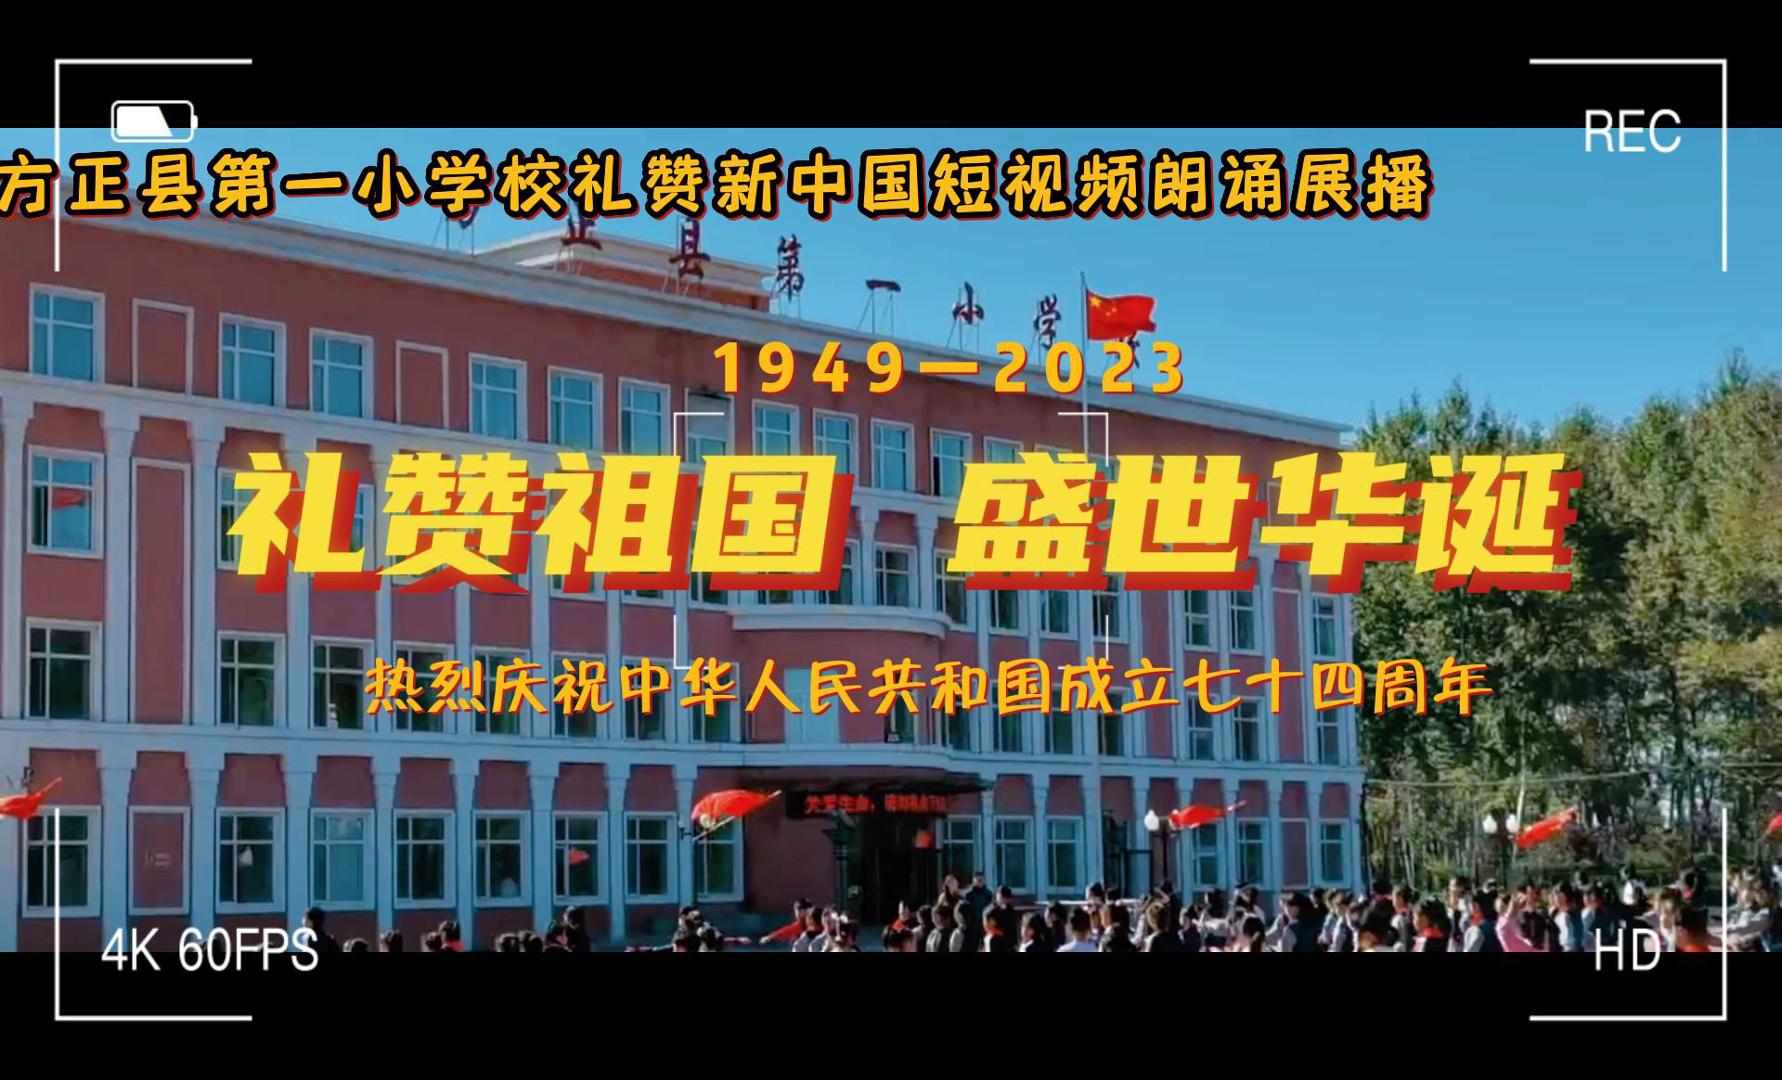 “礼赞祖国 盛世华诞”——方正县第一小学校礼赞新中国短视频朗诵展播（二）